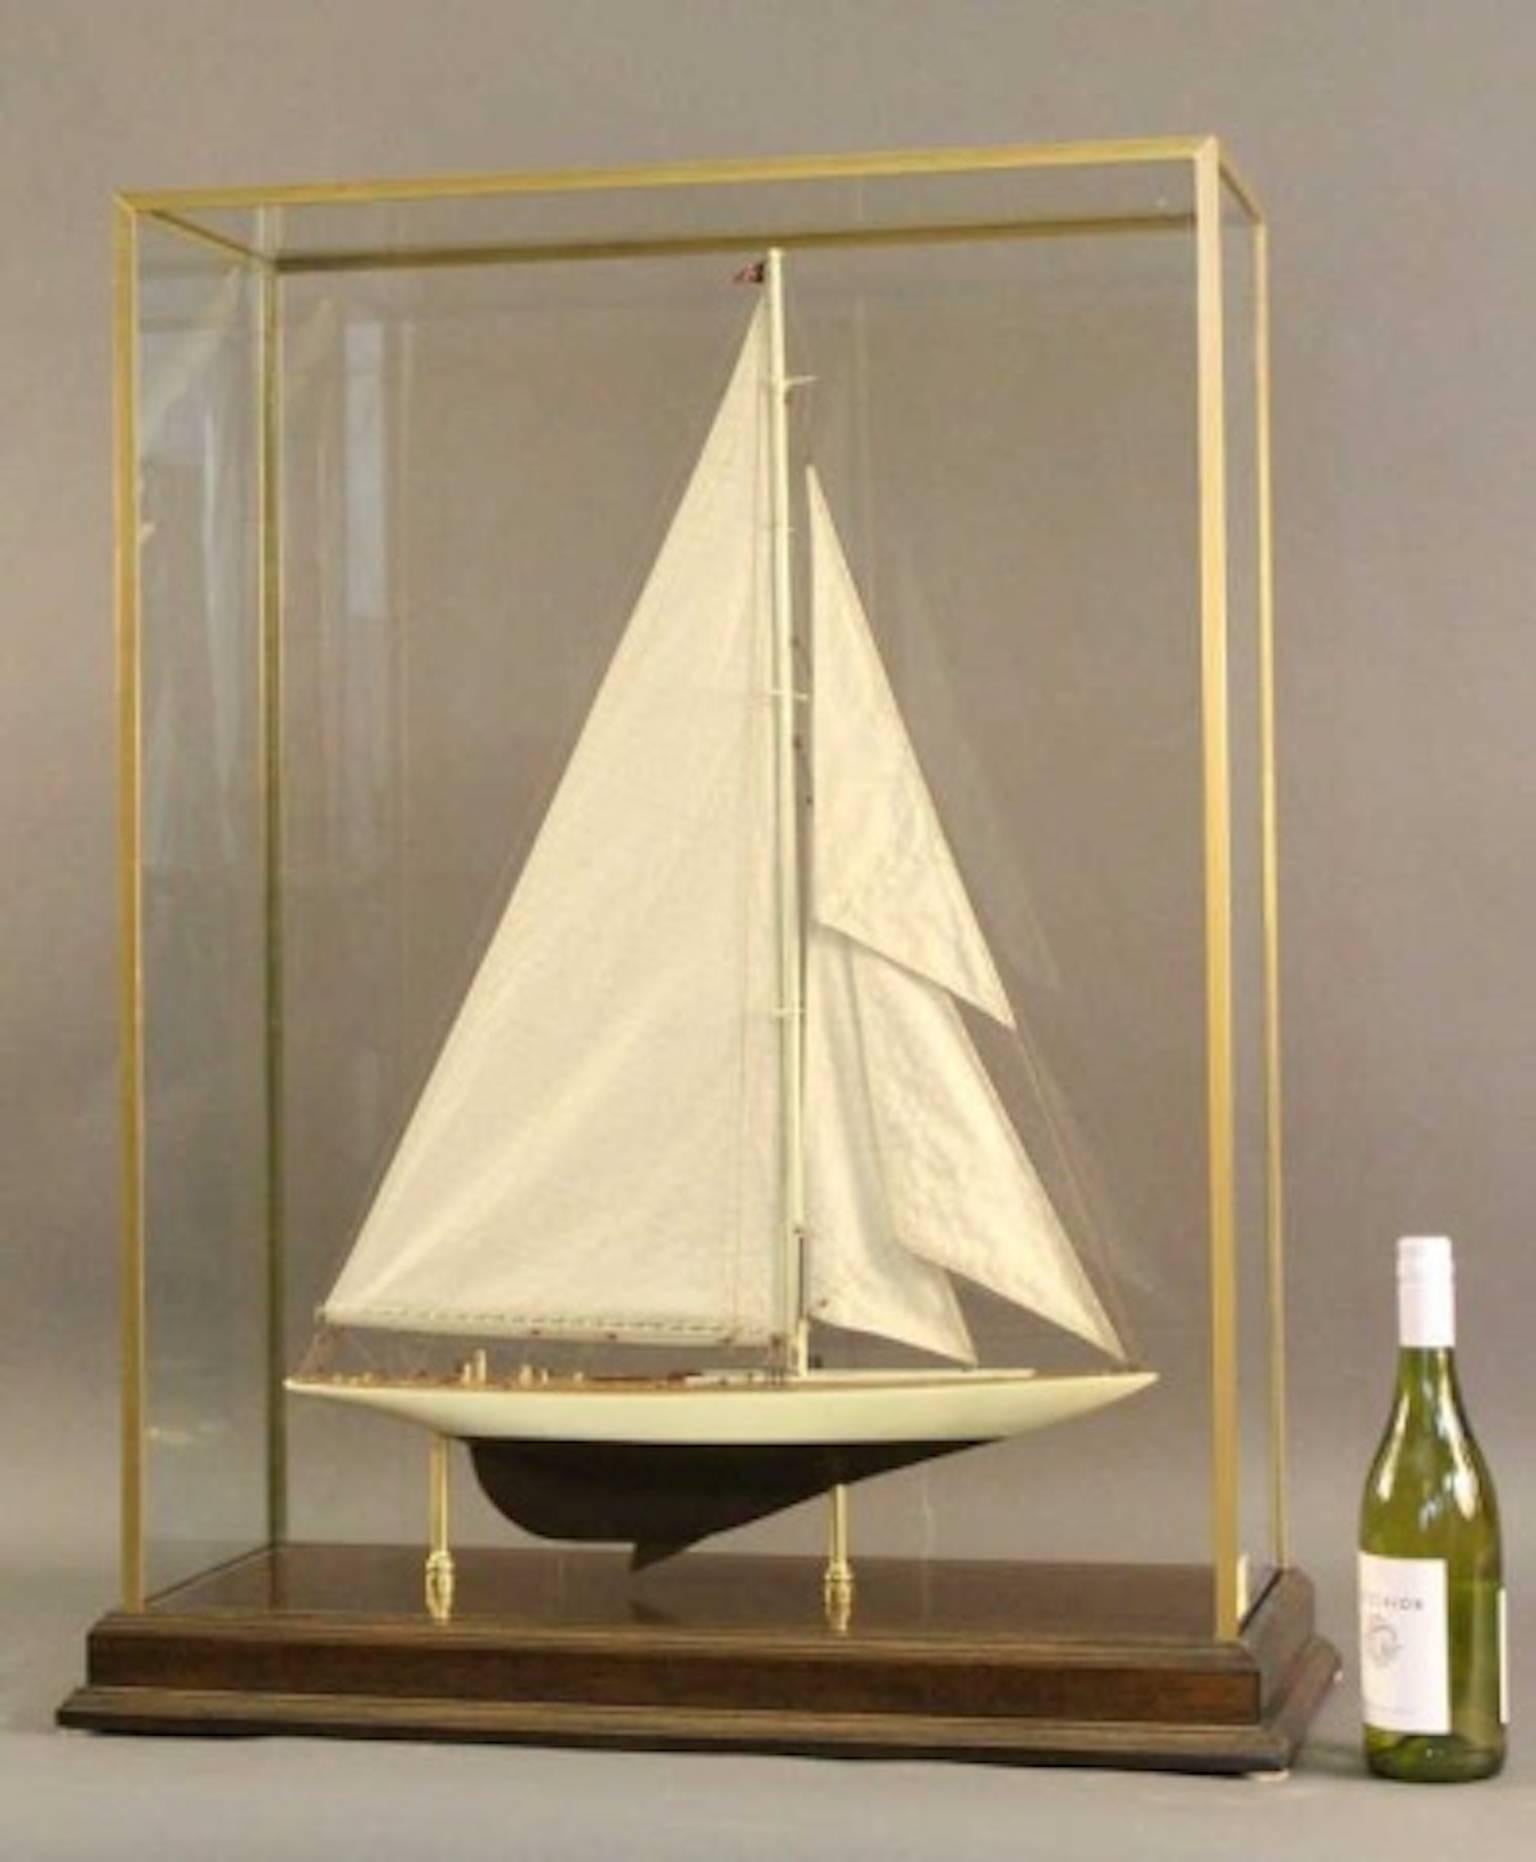 america's cup catamaran scale model